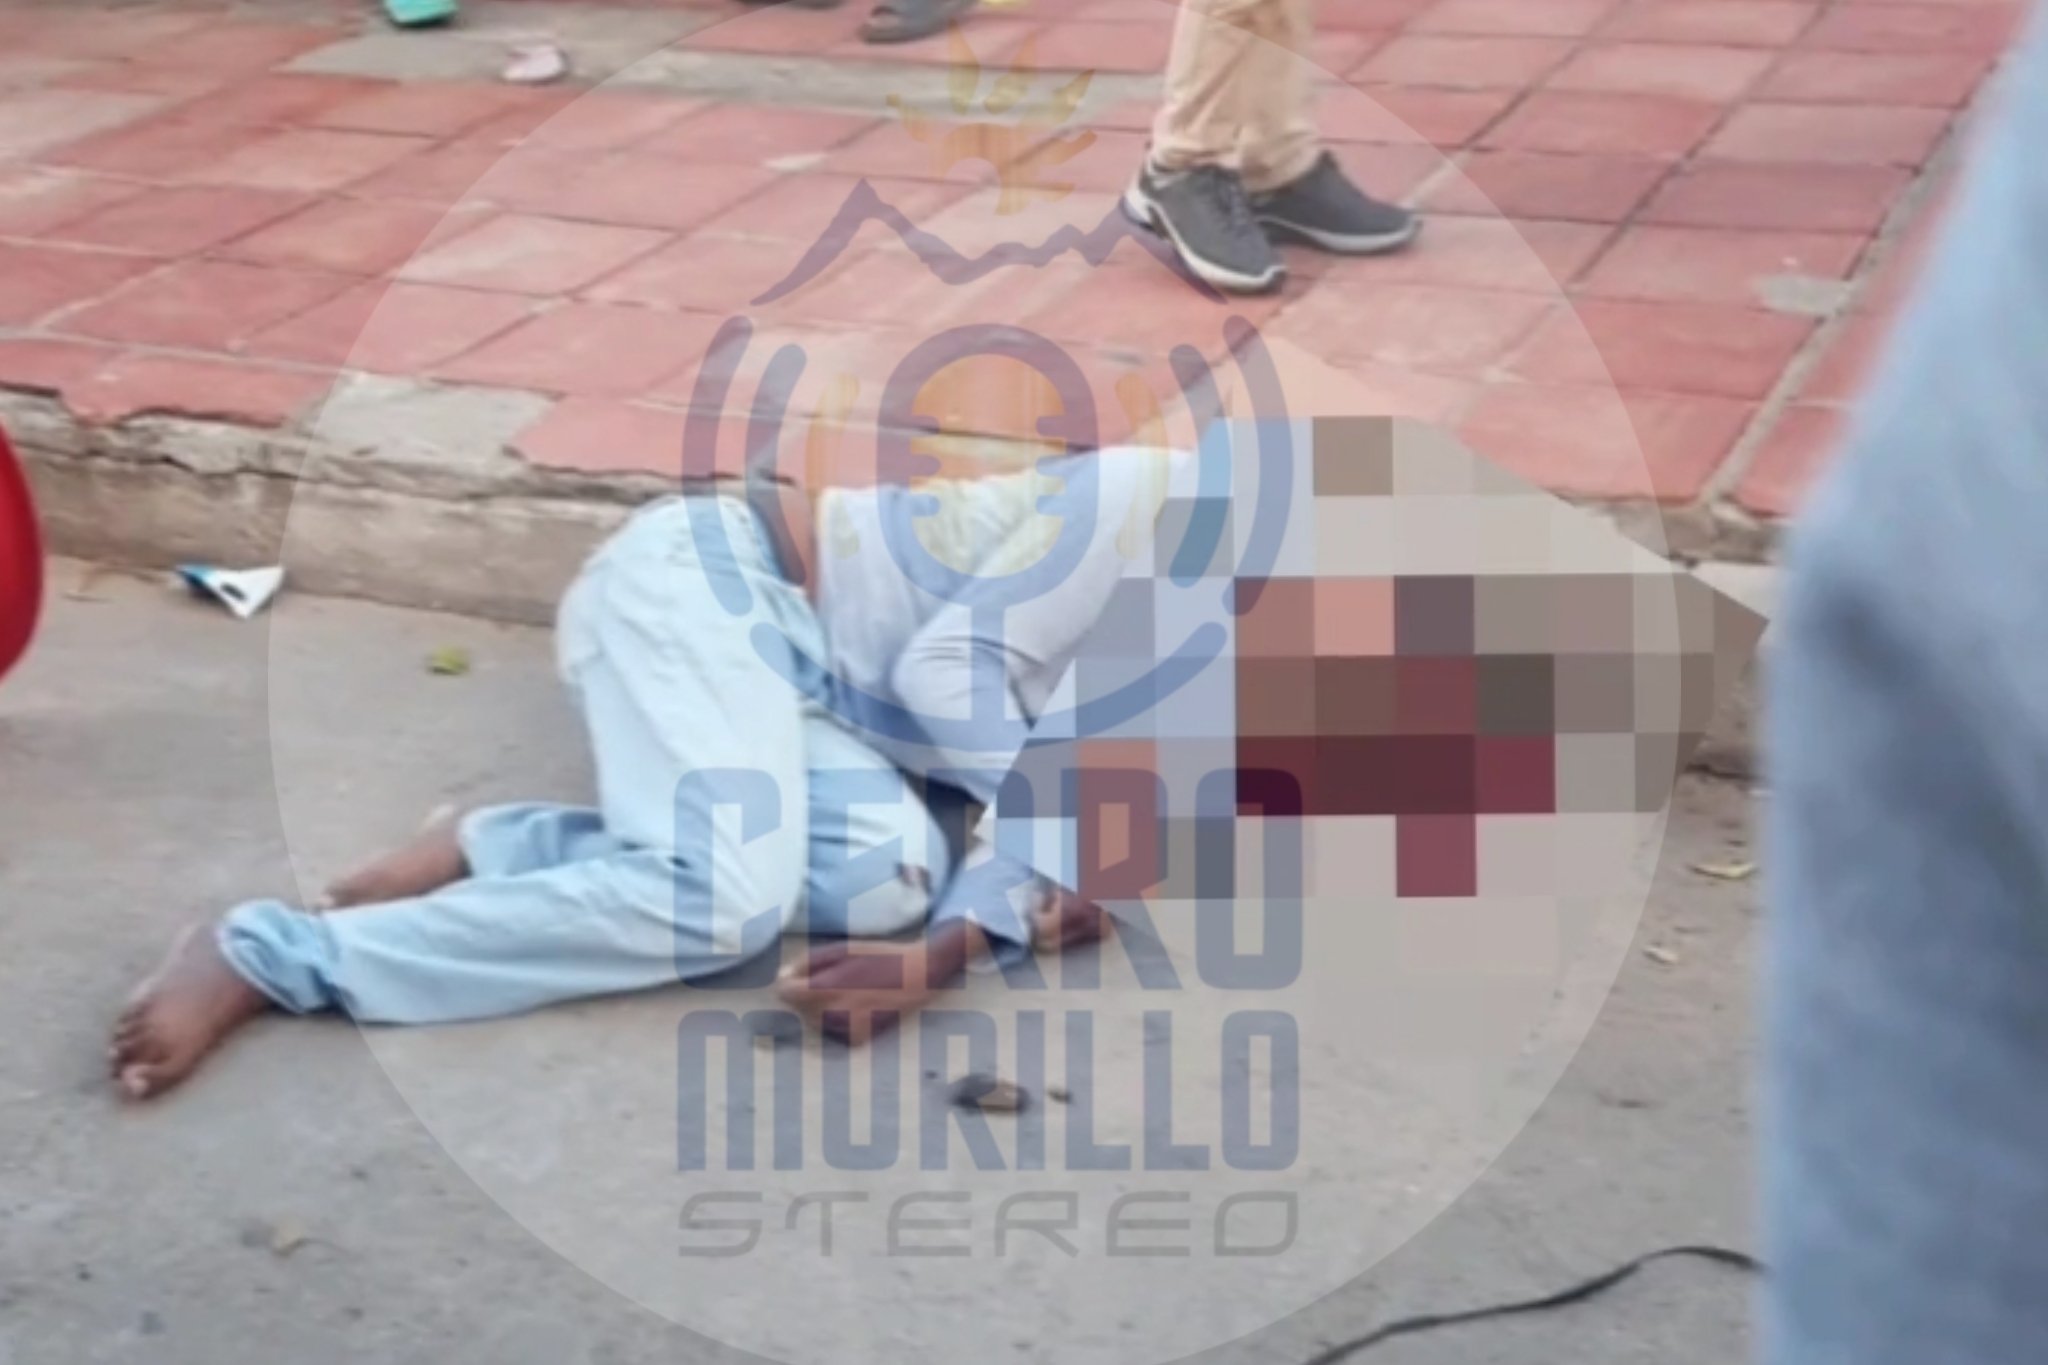 Joven es asesinado en plena vía pública en el barrio San Martin en Valledupar